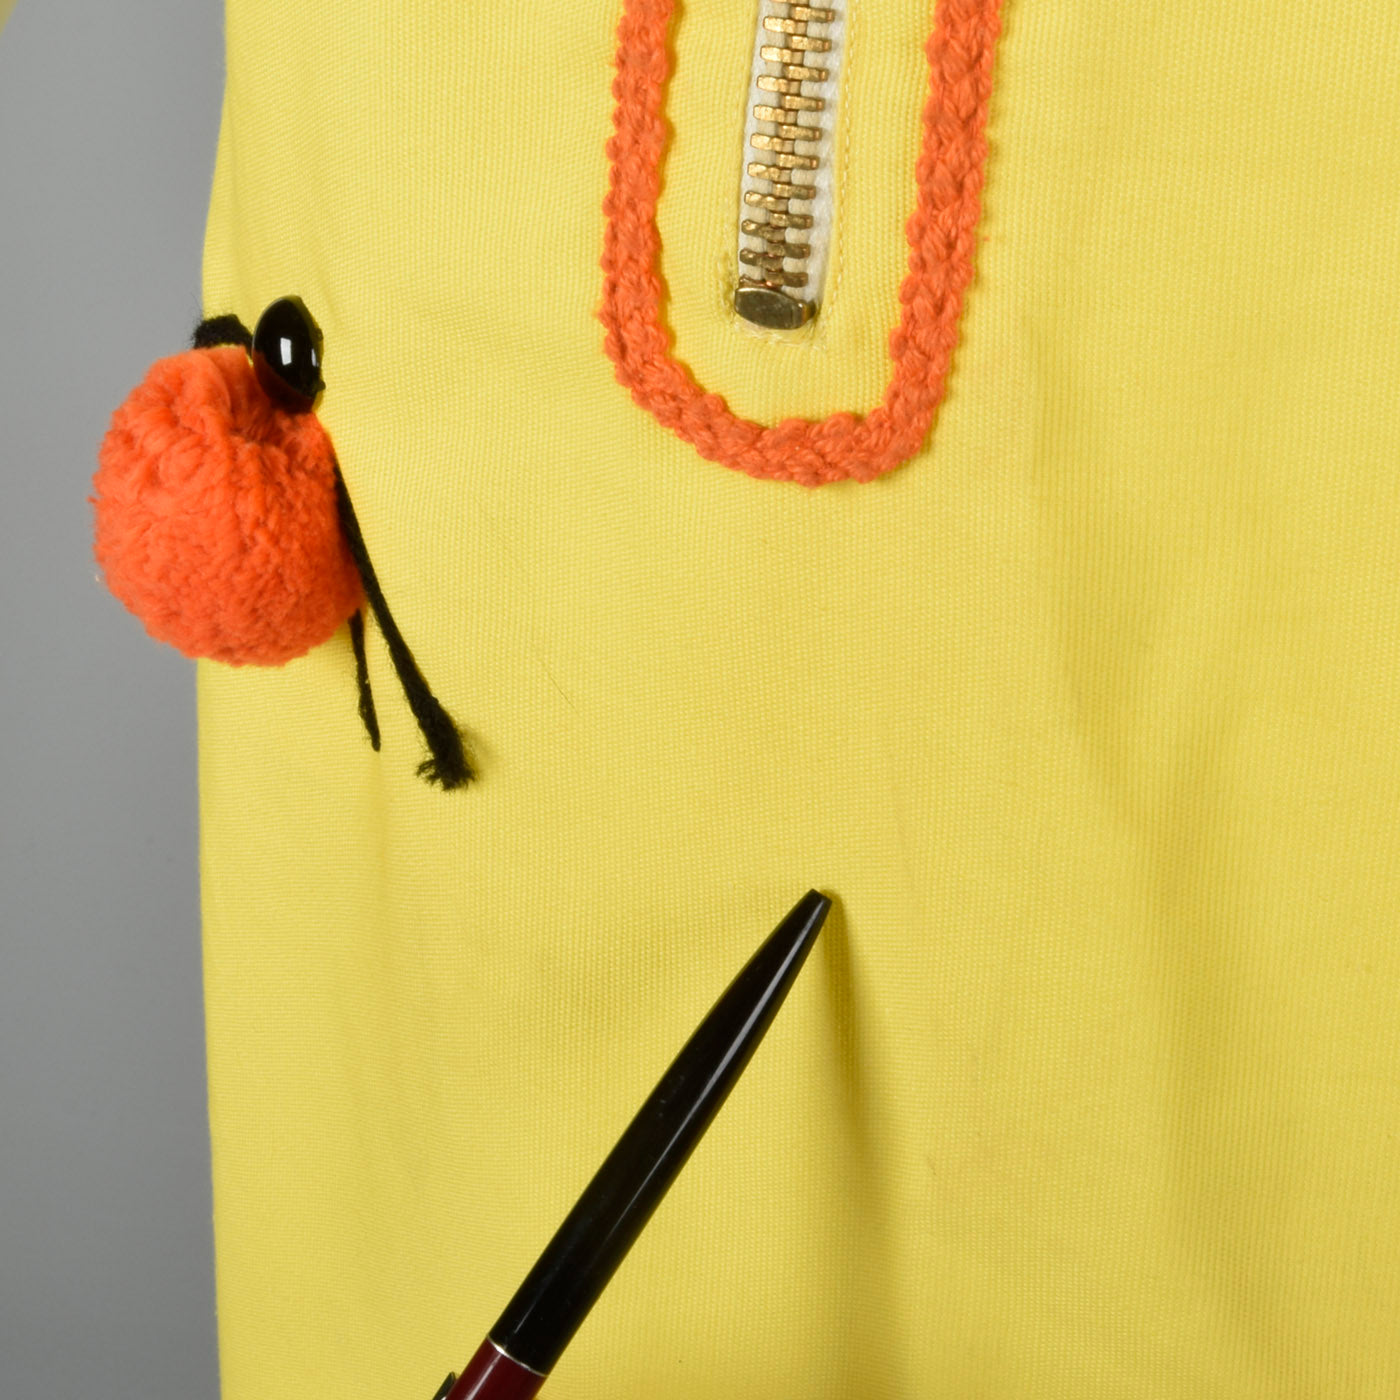 1960s Zip Front Dress with Pom Pom Ladybugs